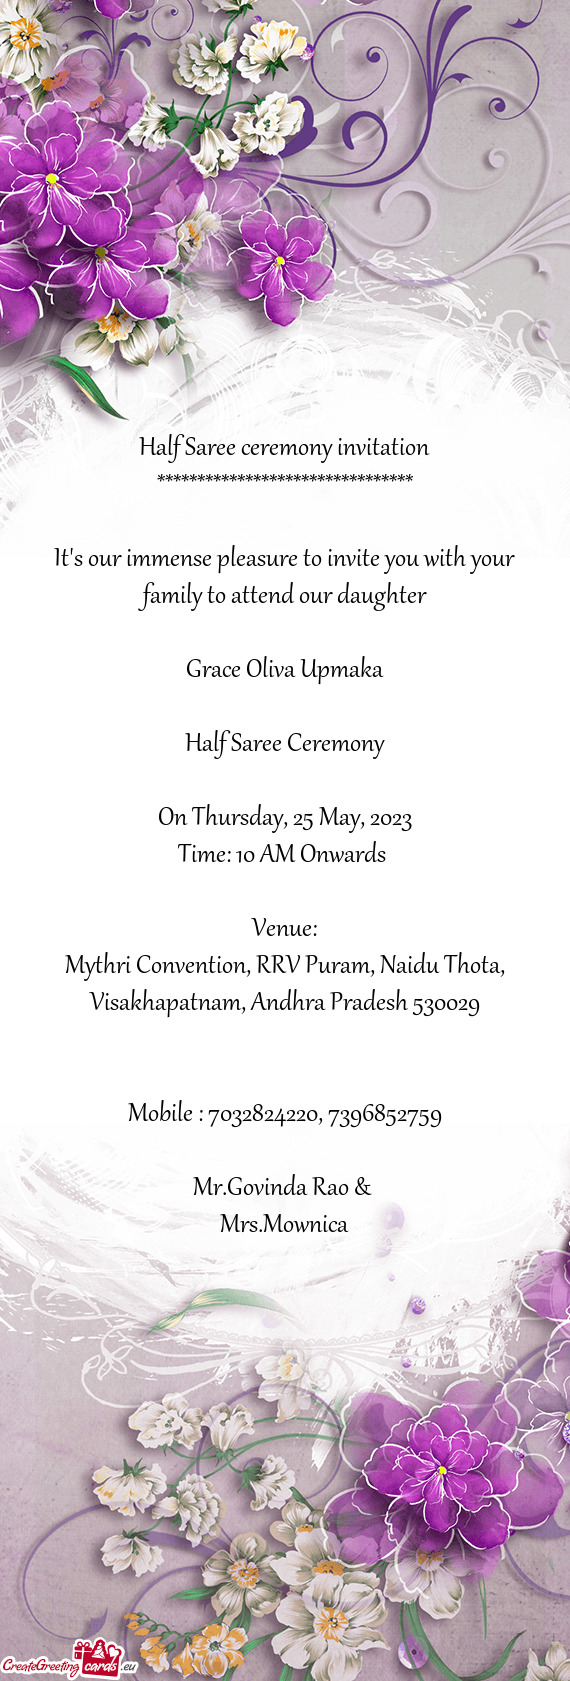 Mythri Convention, RRV Puram, Naidu Thota, Visakhapatnam, Andhra Pradesh 530029